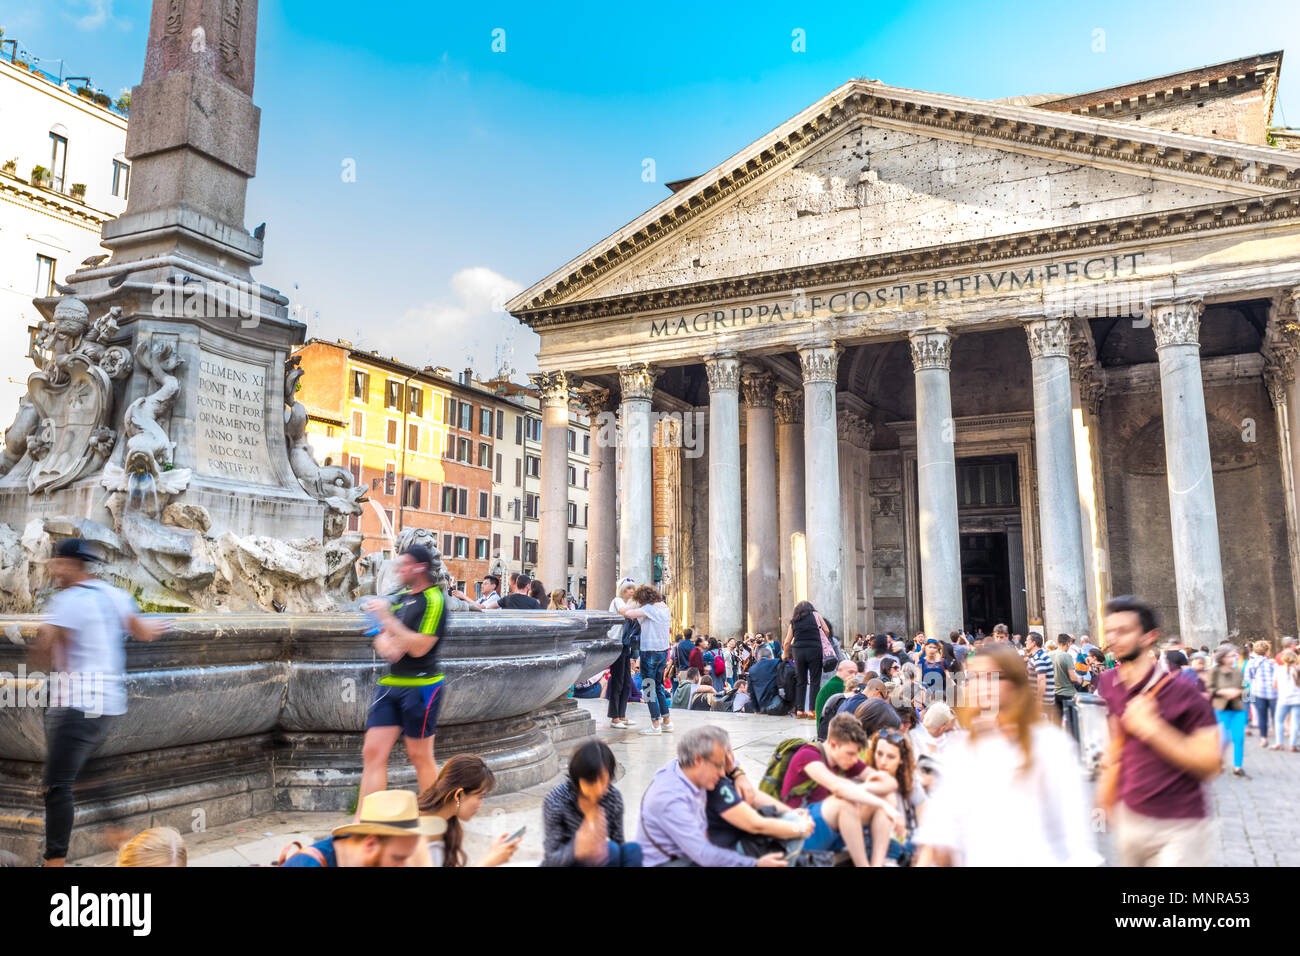 La facciata del Pantheon di Roma con i turisti a piedi attorno alla fontana al centro della piazza Foto Stock